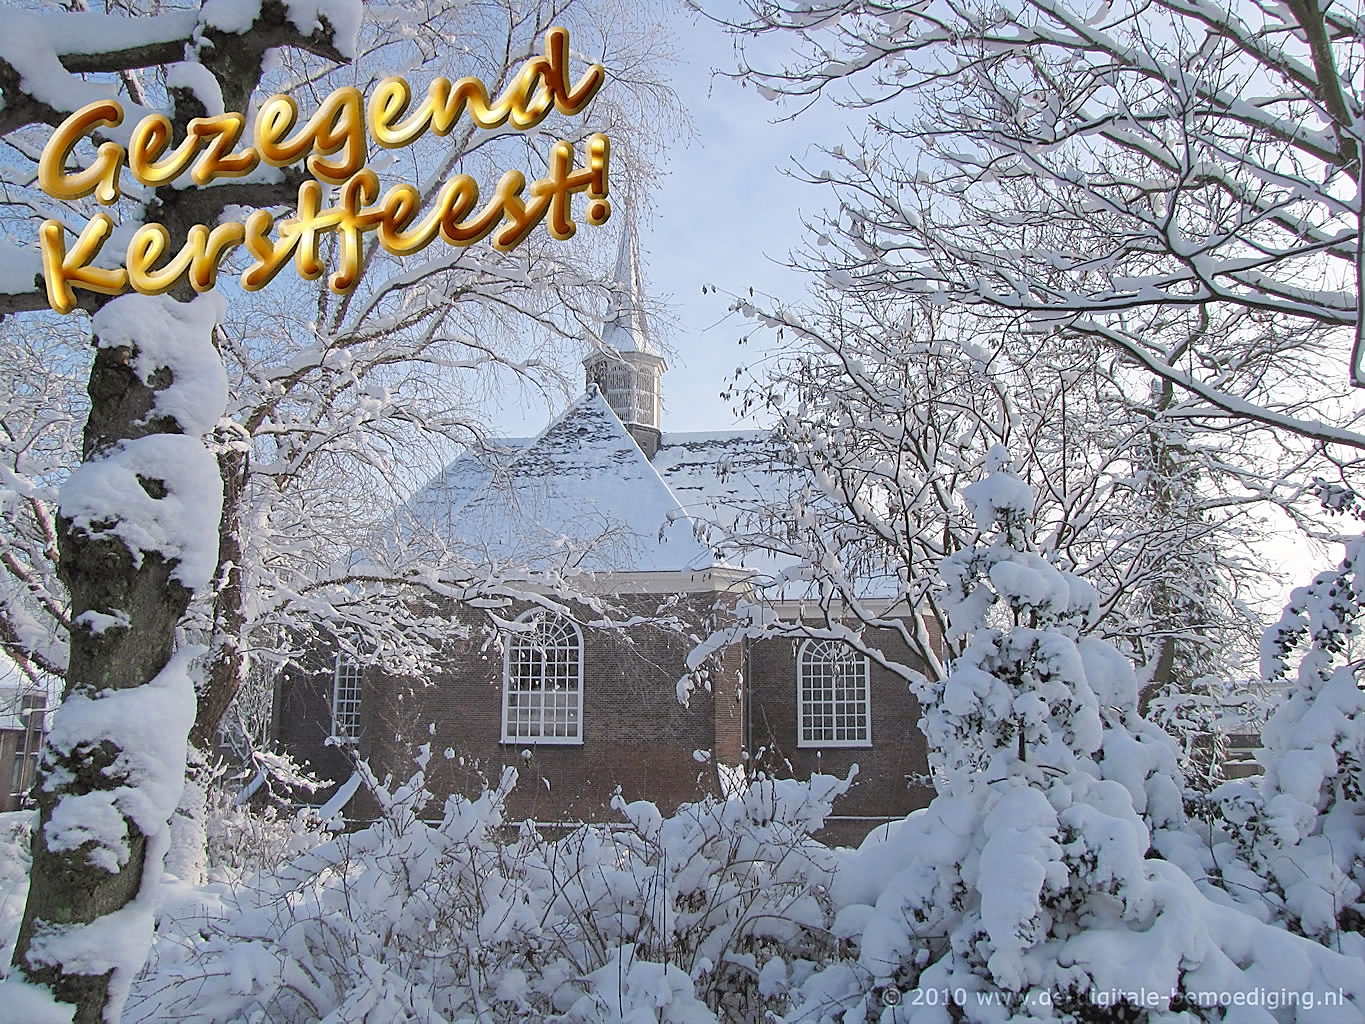 Gezegende Kerstdagen Ecard winter kerk